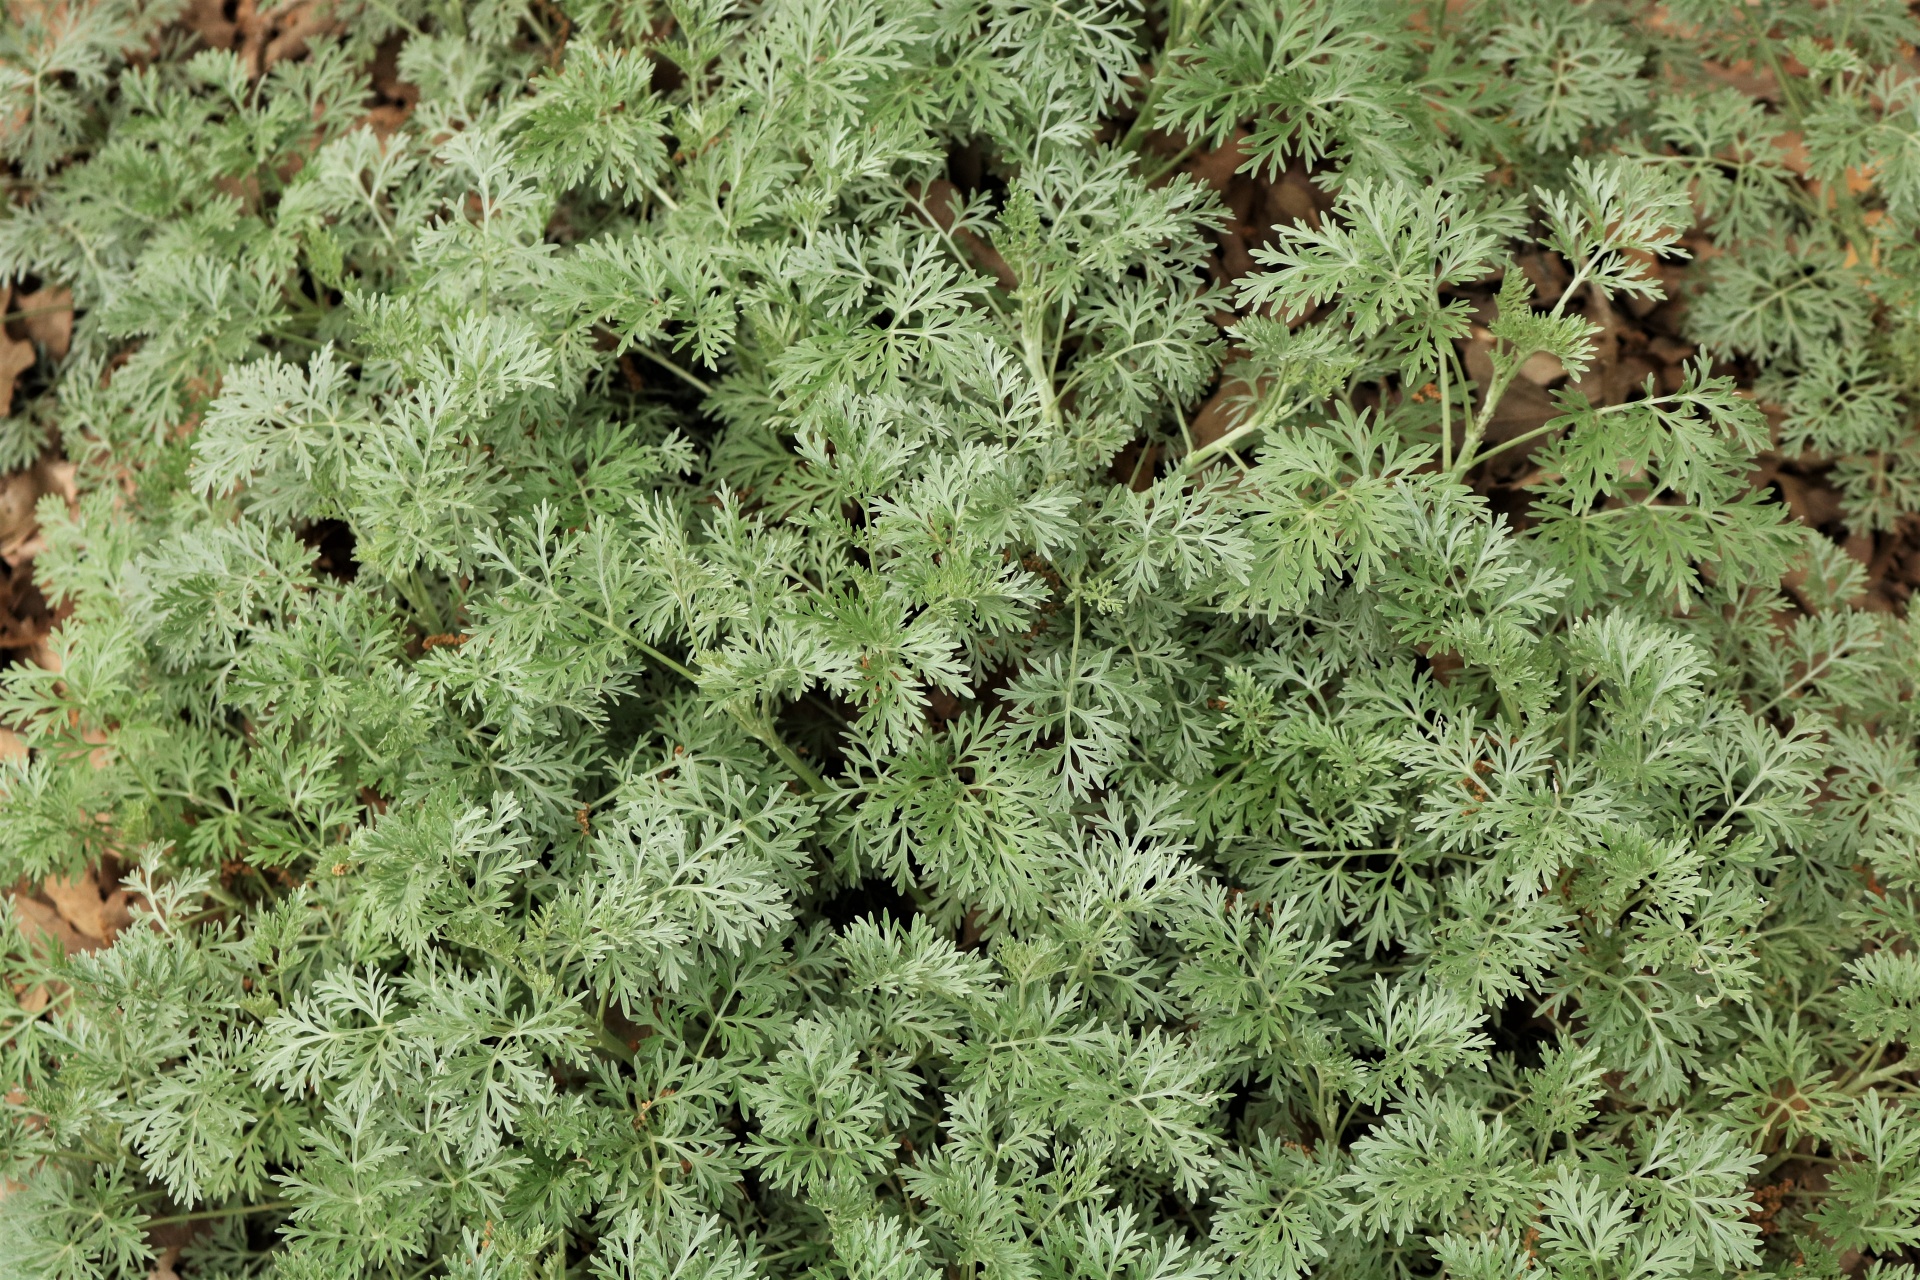 Artemisia planta close-up